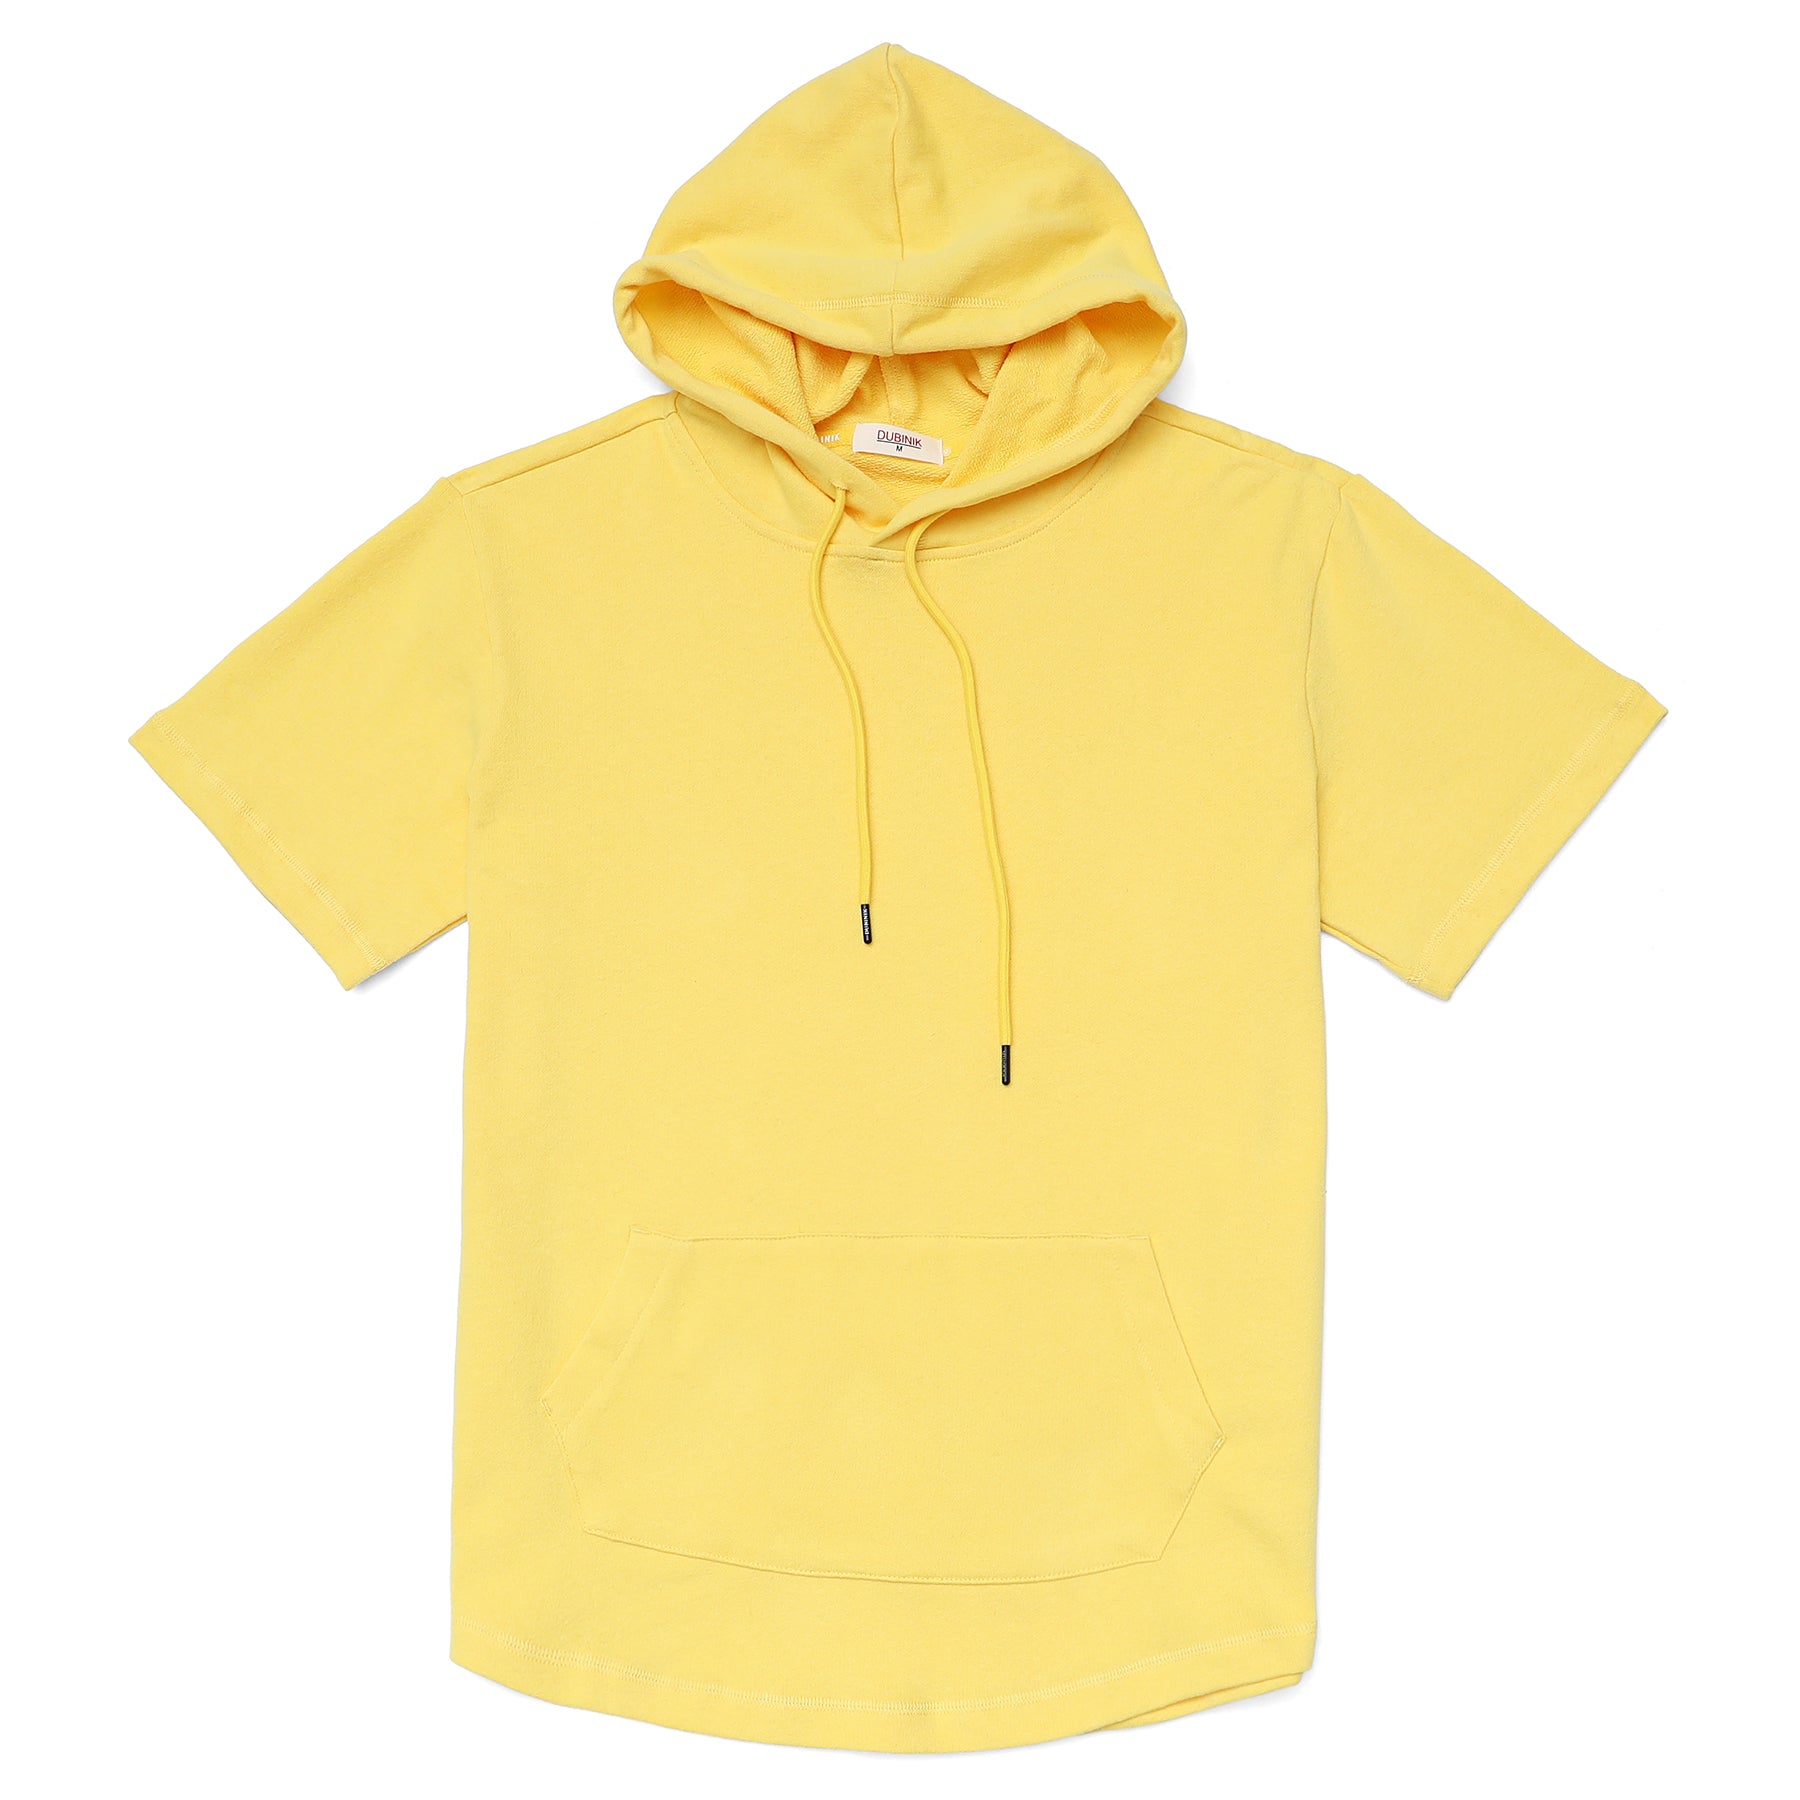 Men's Hoodies short-sleeved hooded sweatshirt #0608